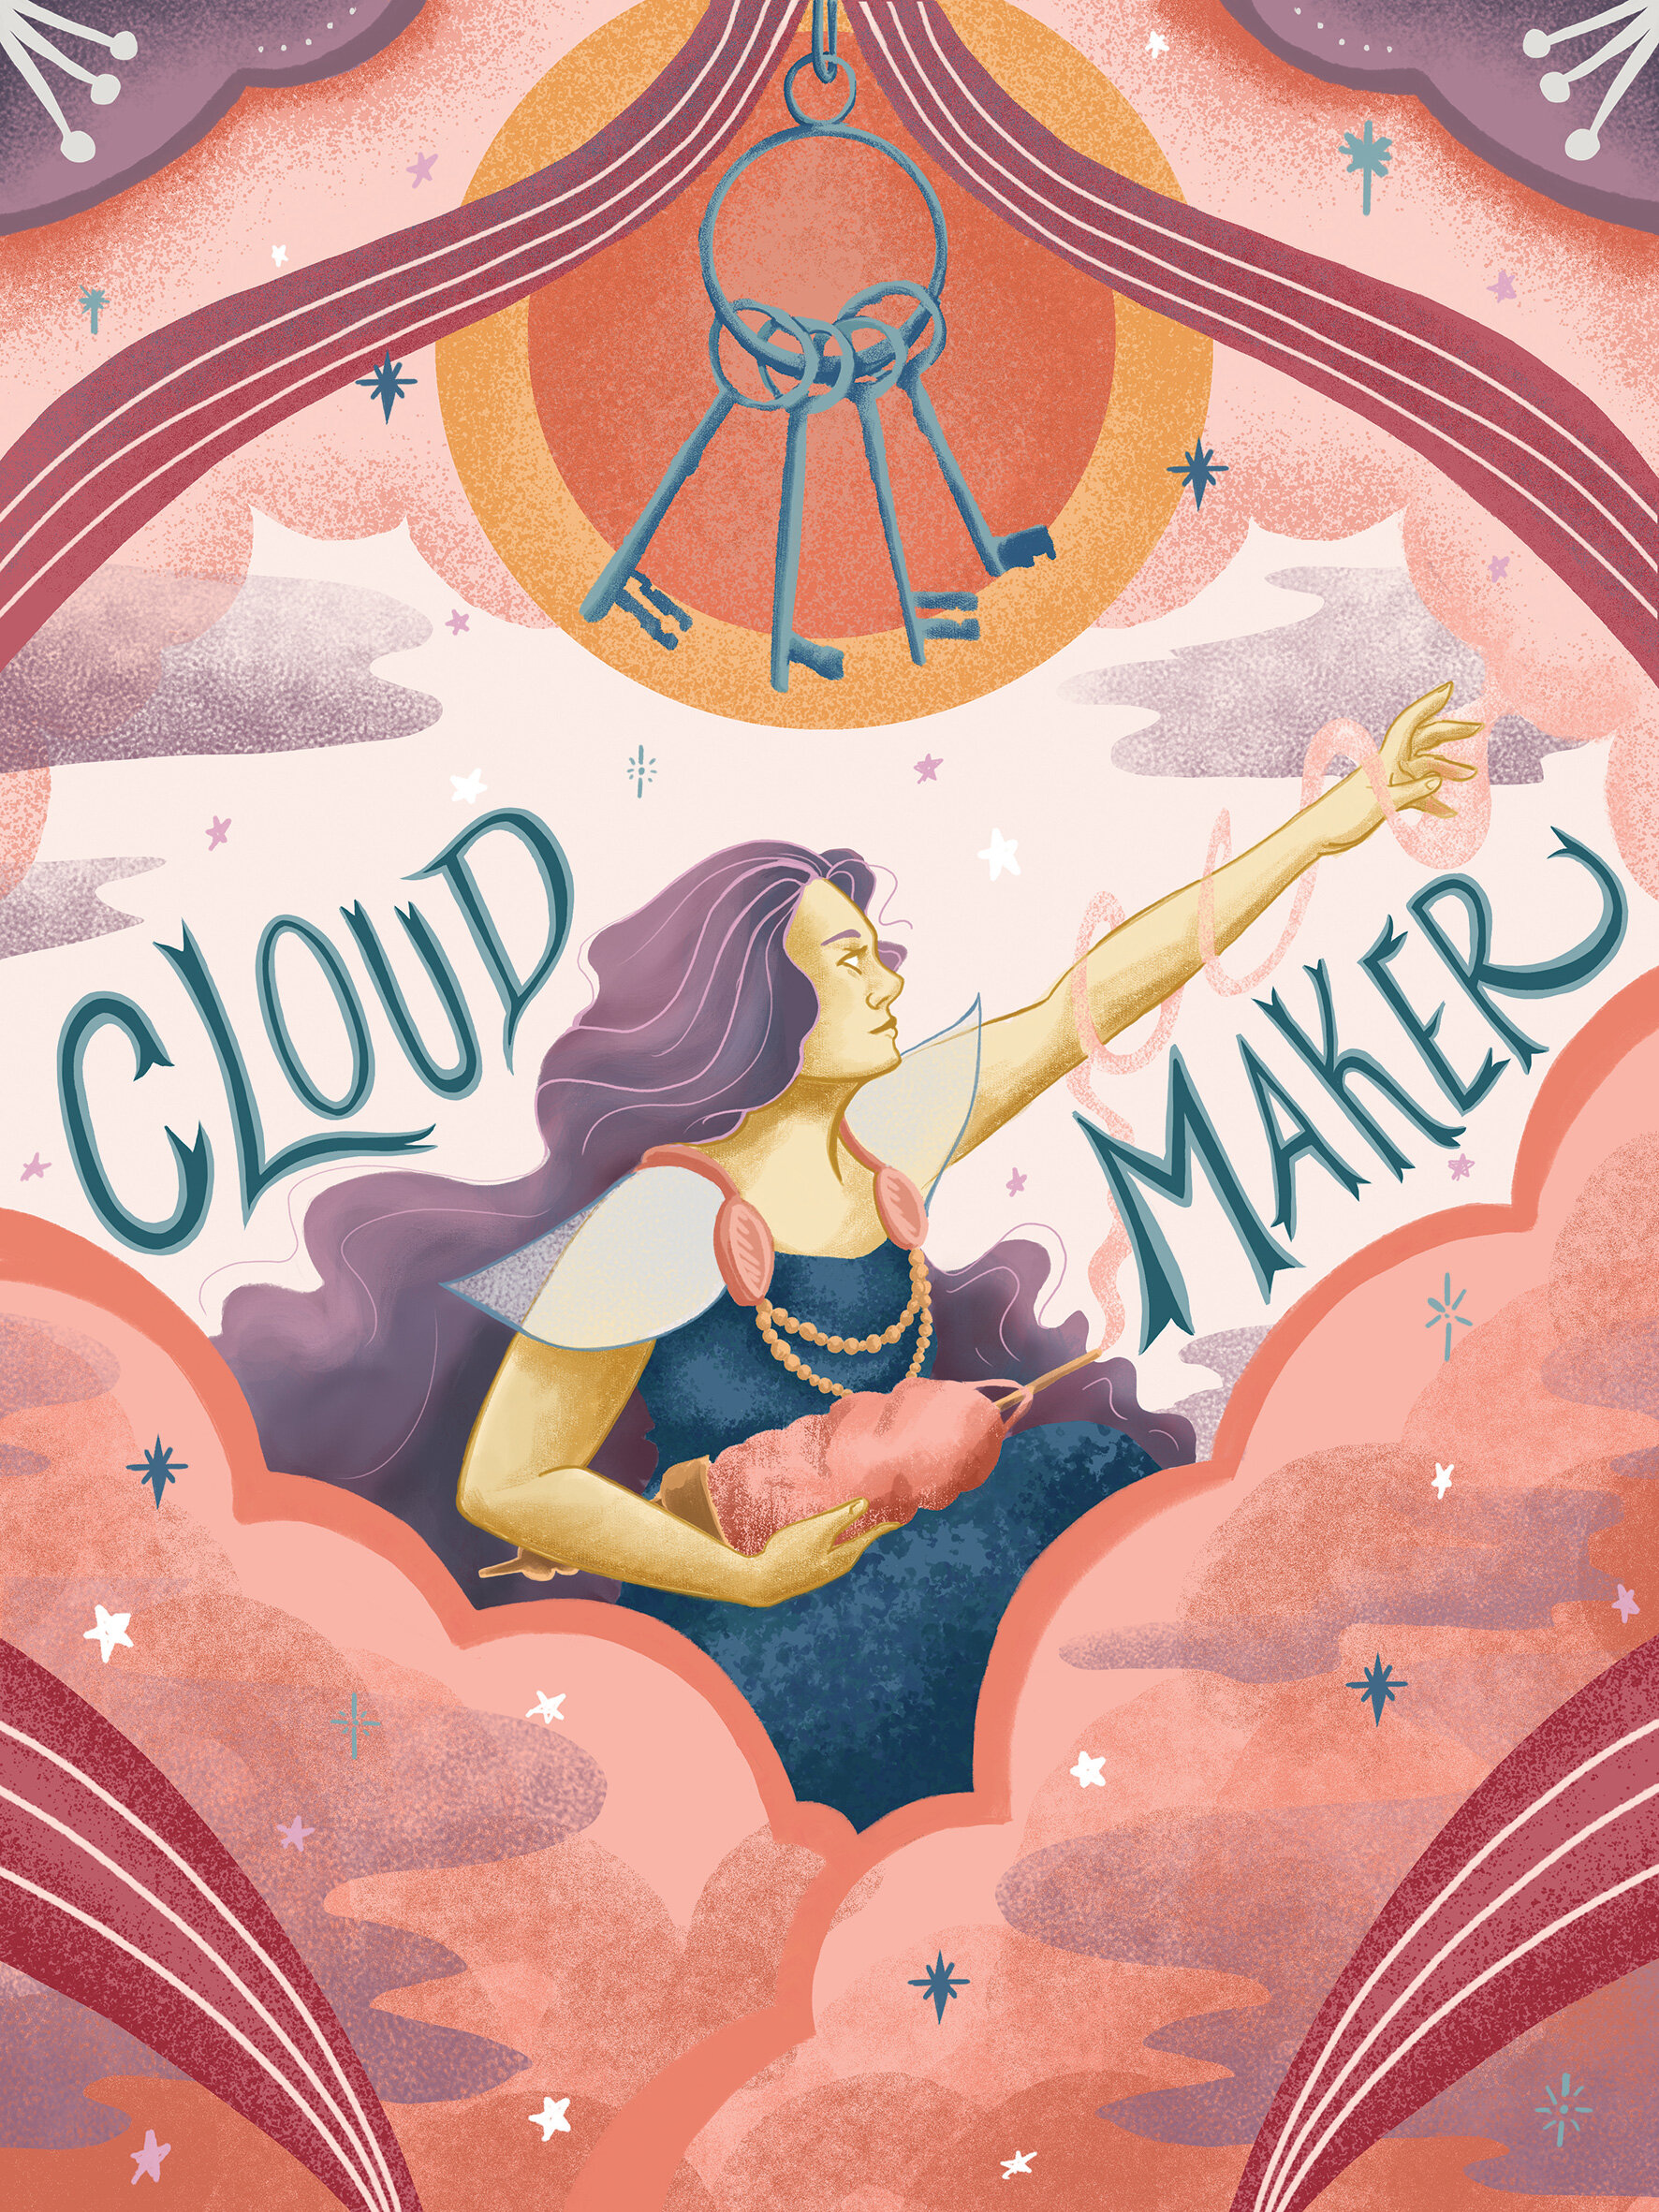 Frigg-the-Cloud-Maker-2020.jpg